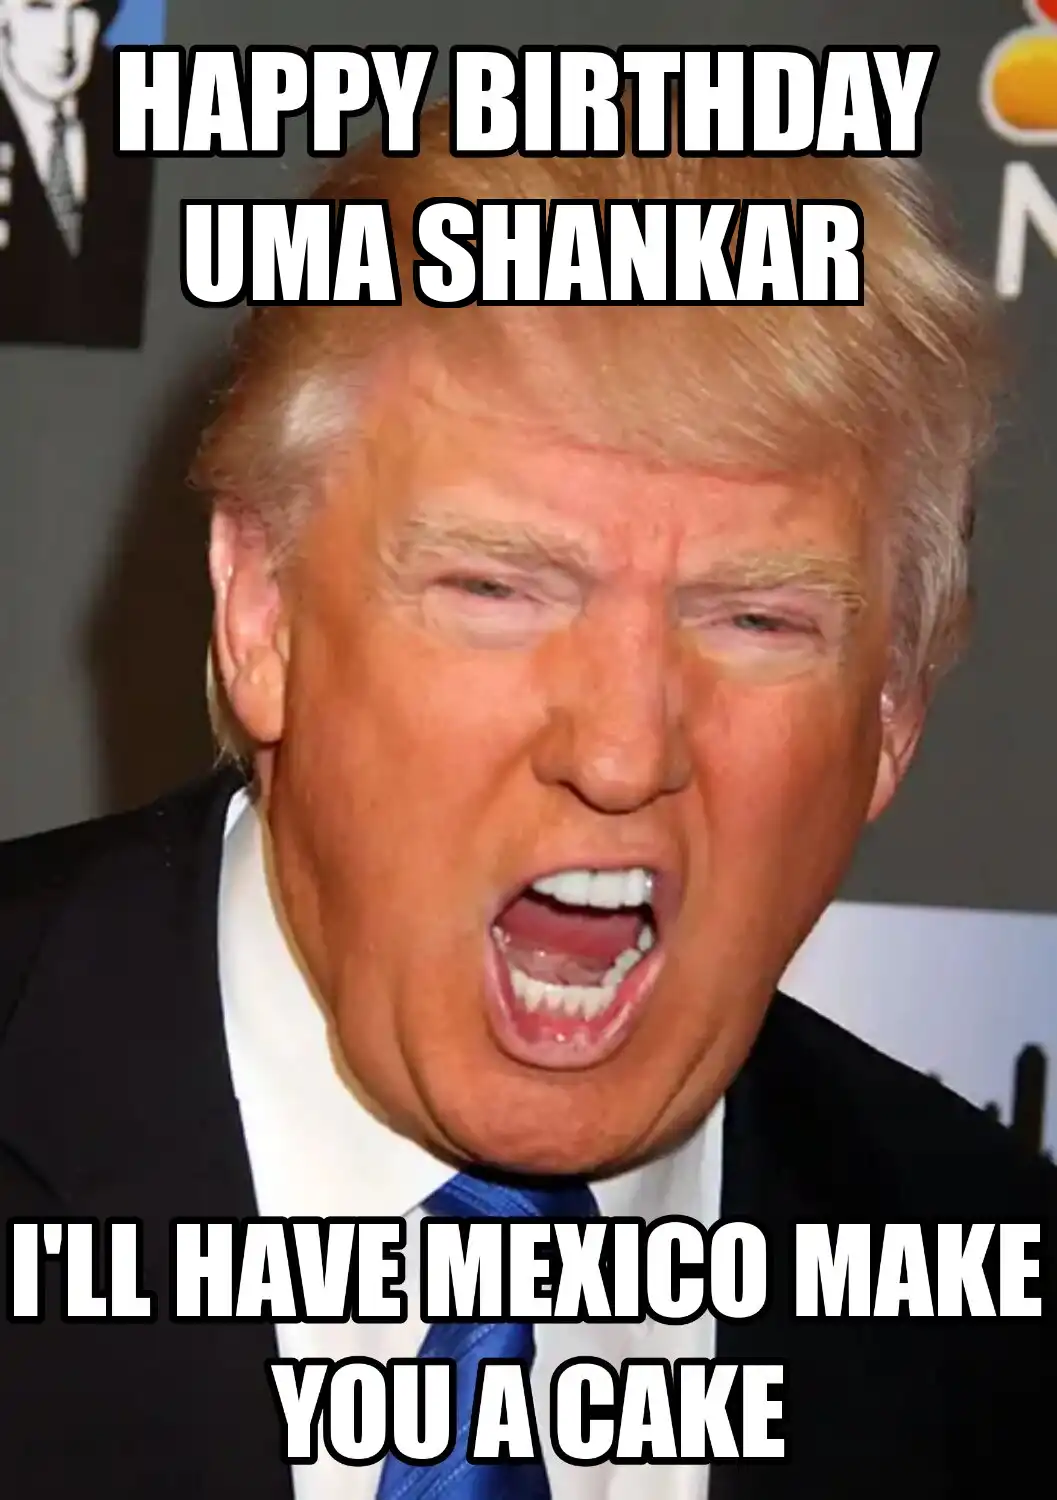 Happy Birthday Uma shankar Mexico Make You A Cake Meme